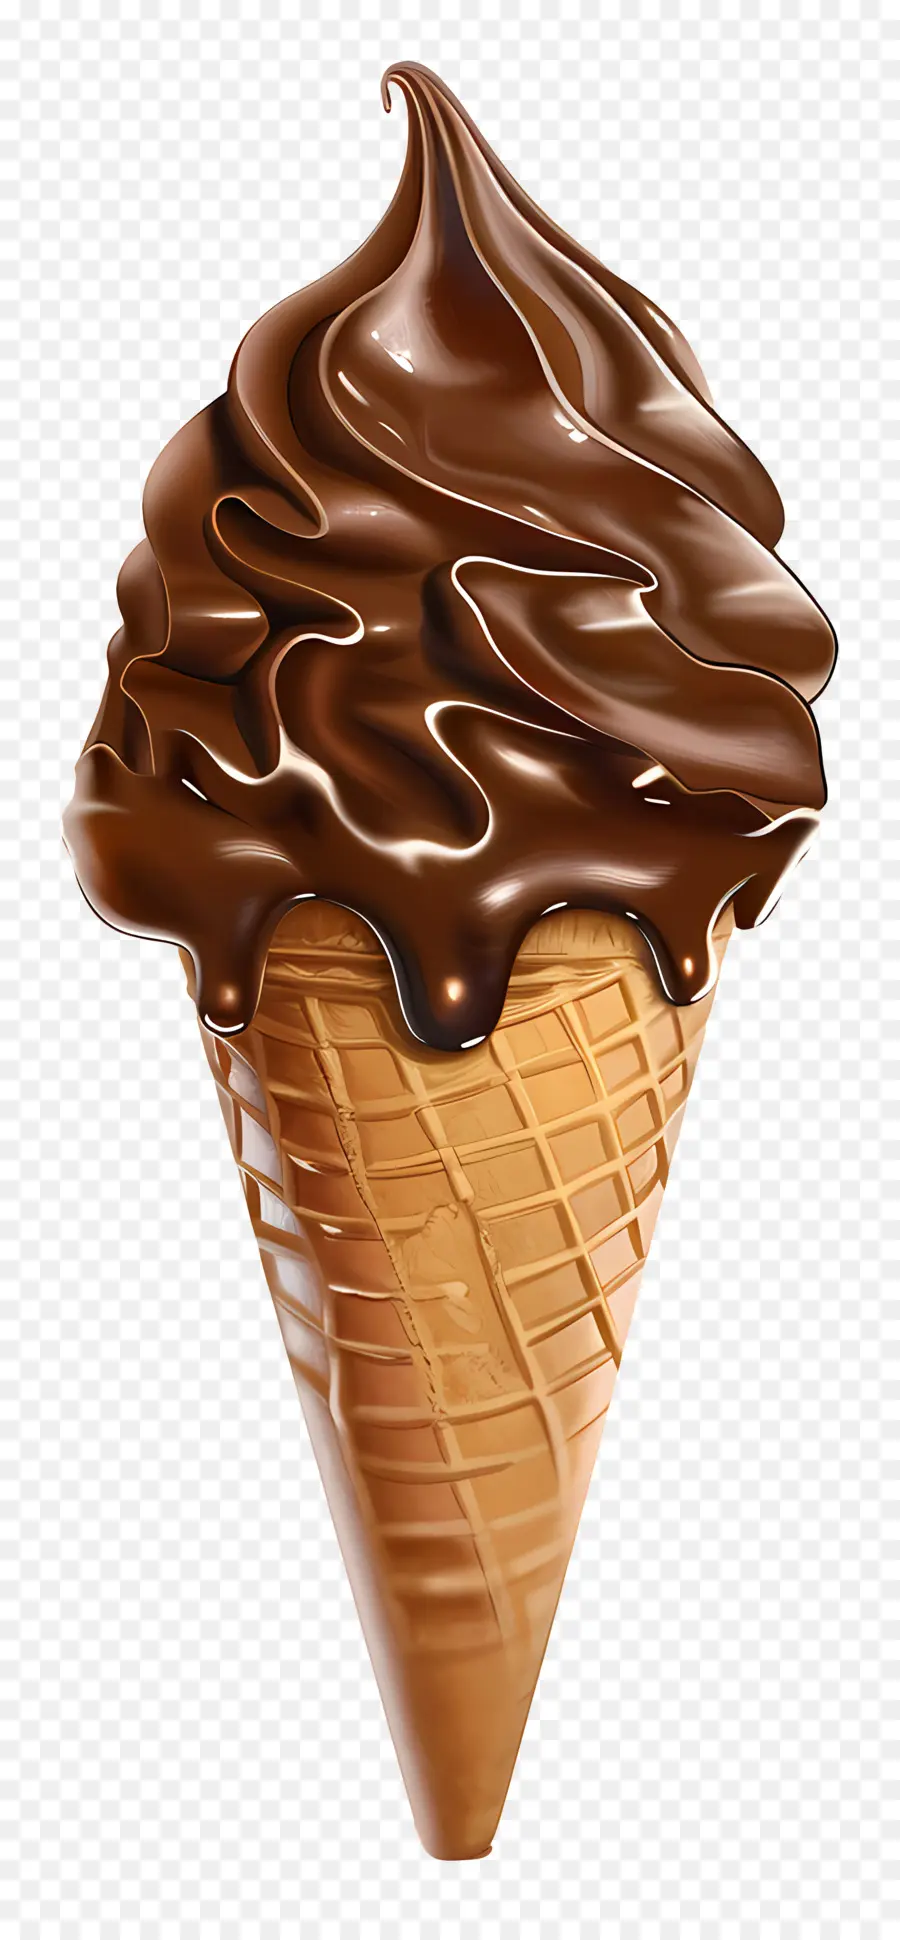 gelato - Cono gelato al cioccolato con salsa gocciolante